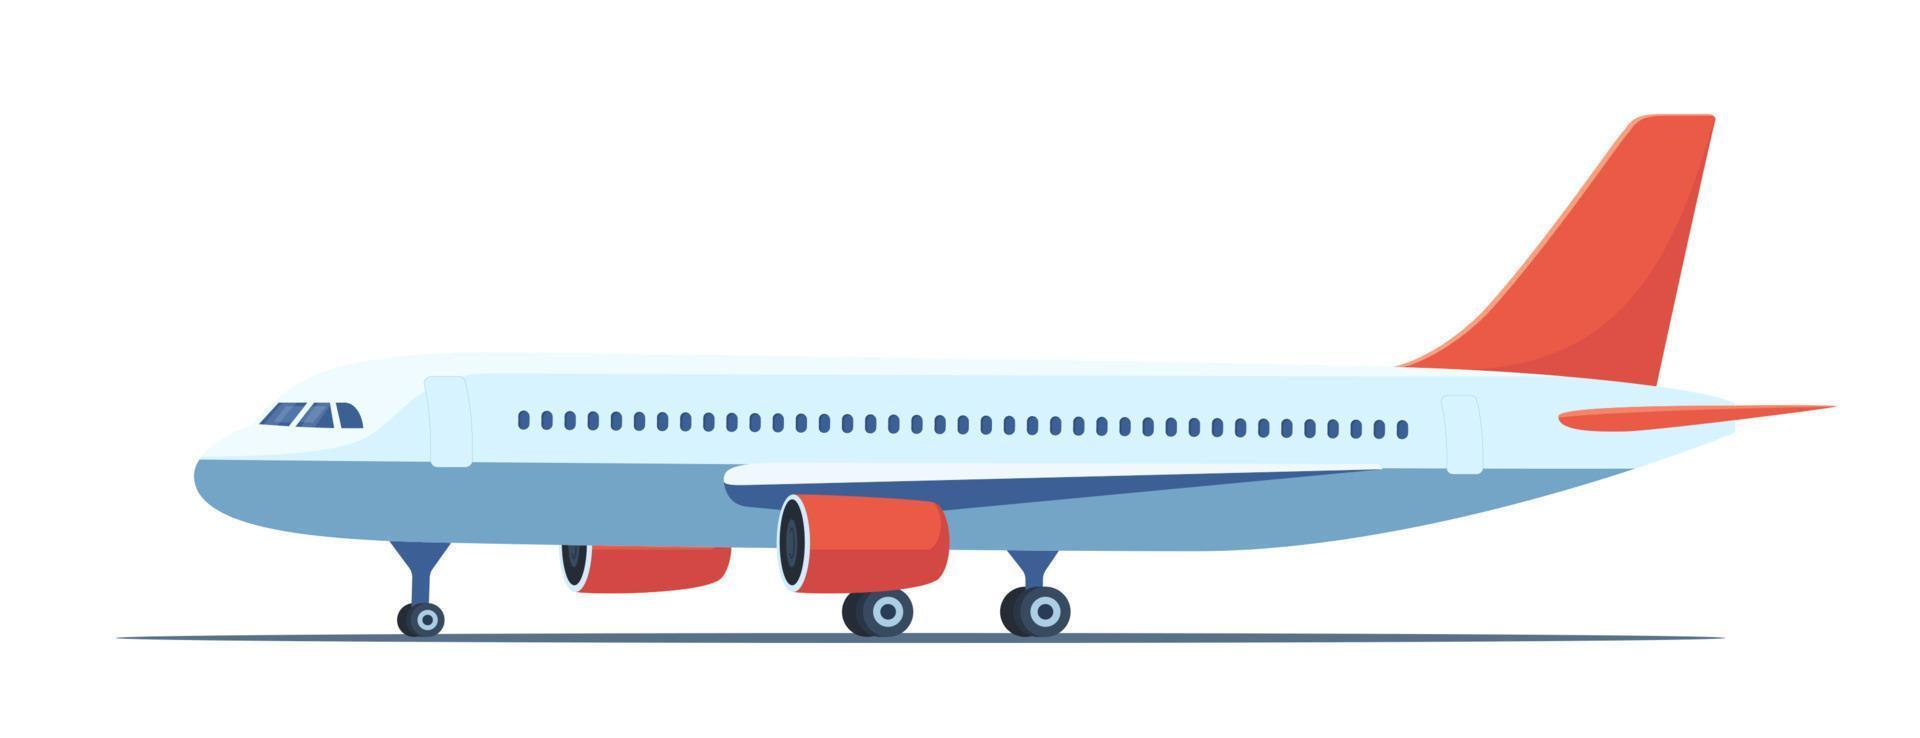 avion de passagers, vue latérale. profil d'avion isolé sur fond blanc. illustration vectorielle plane d'avion avec hublots, ailes et moteurs. vecteur